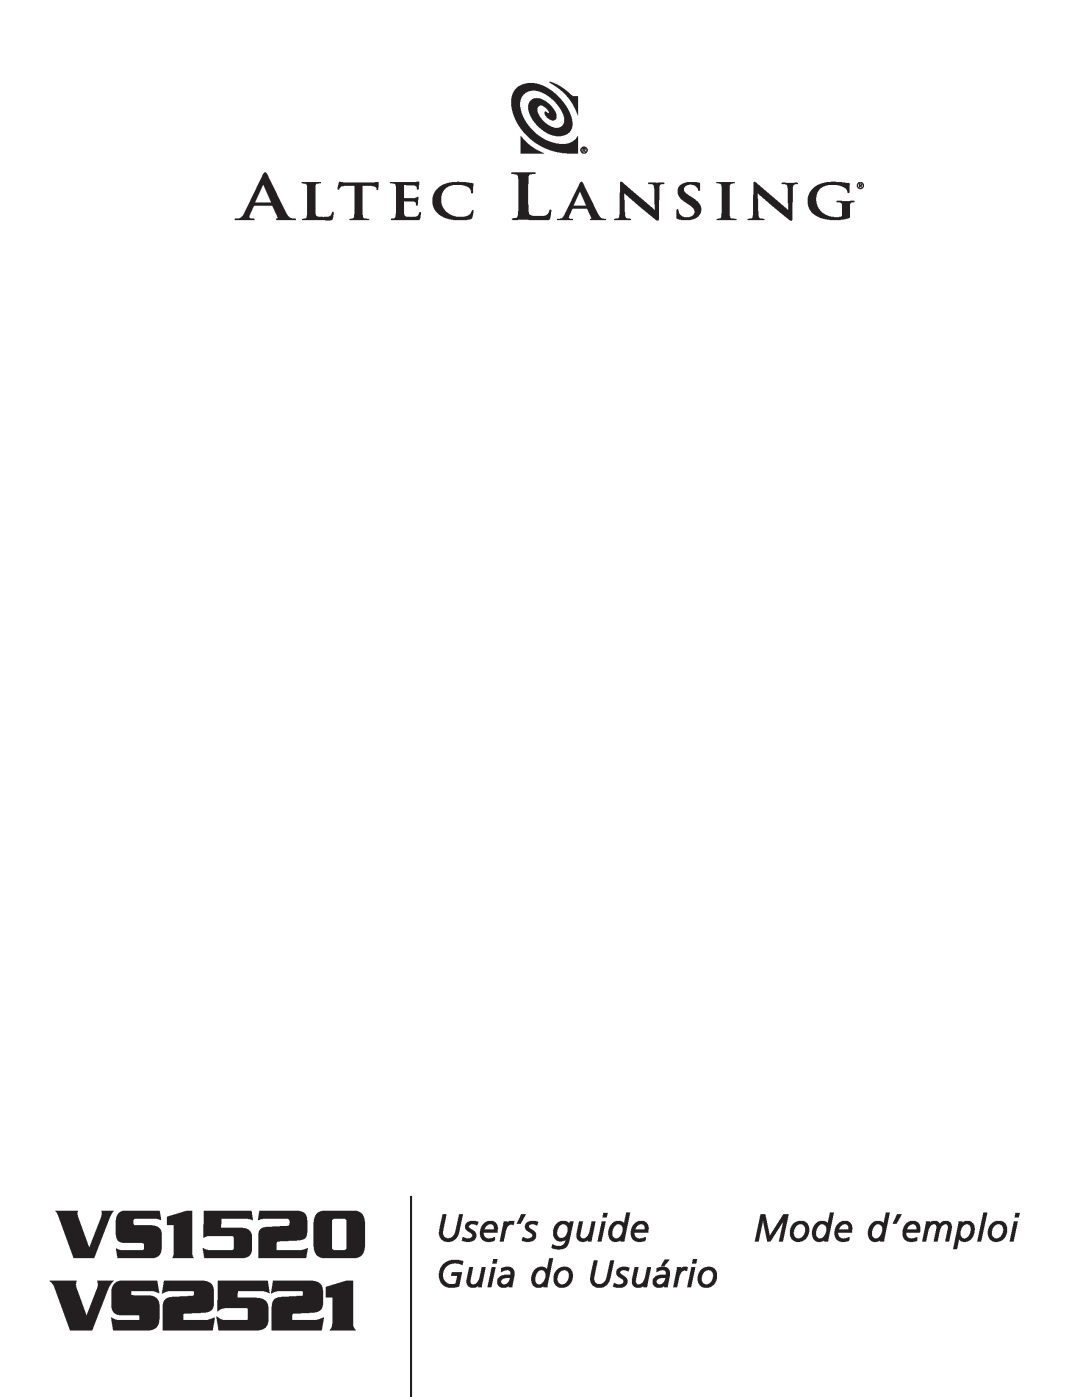 Altec Lansing manual VS1520 VS2521, User’s guide, Mode d’emploi, Guia do Usuário 